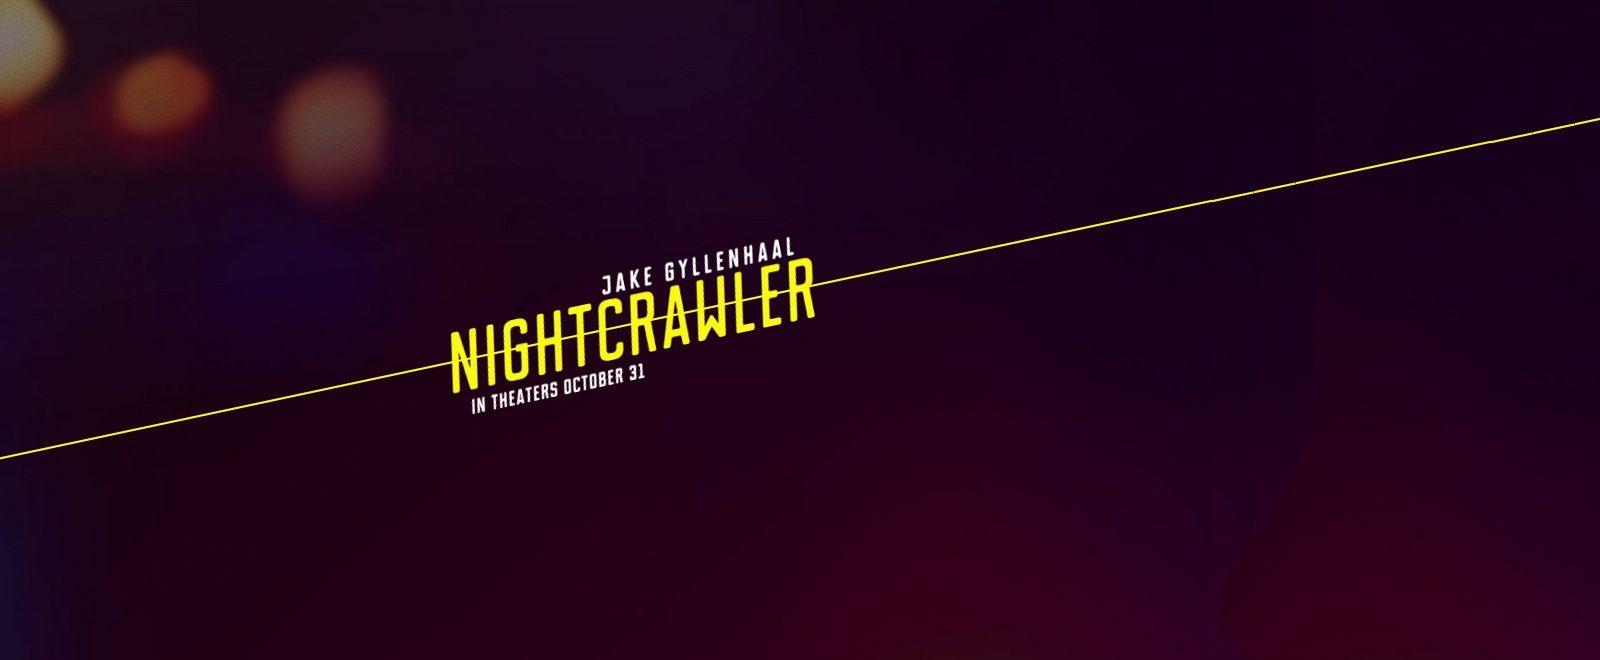 Nightcrawler Logo - Sordid Cinema #85: 'Nightcrawler' - PopOptiq